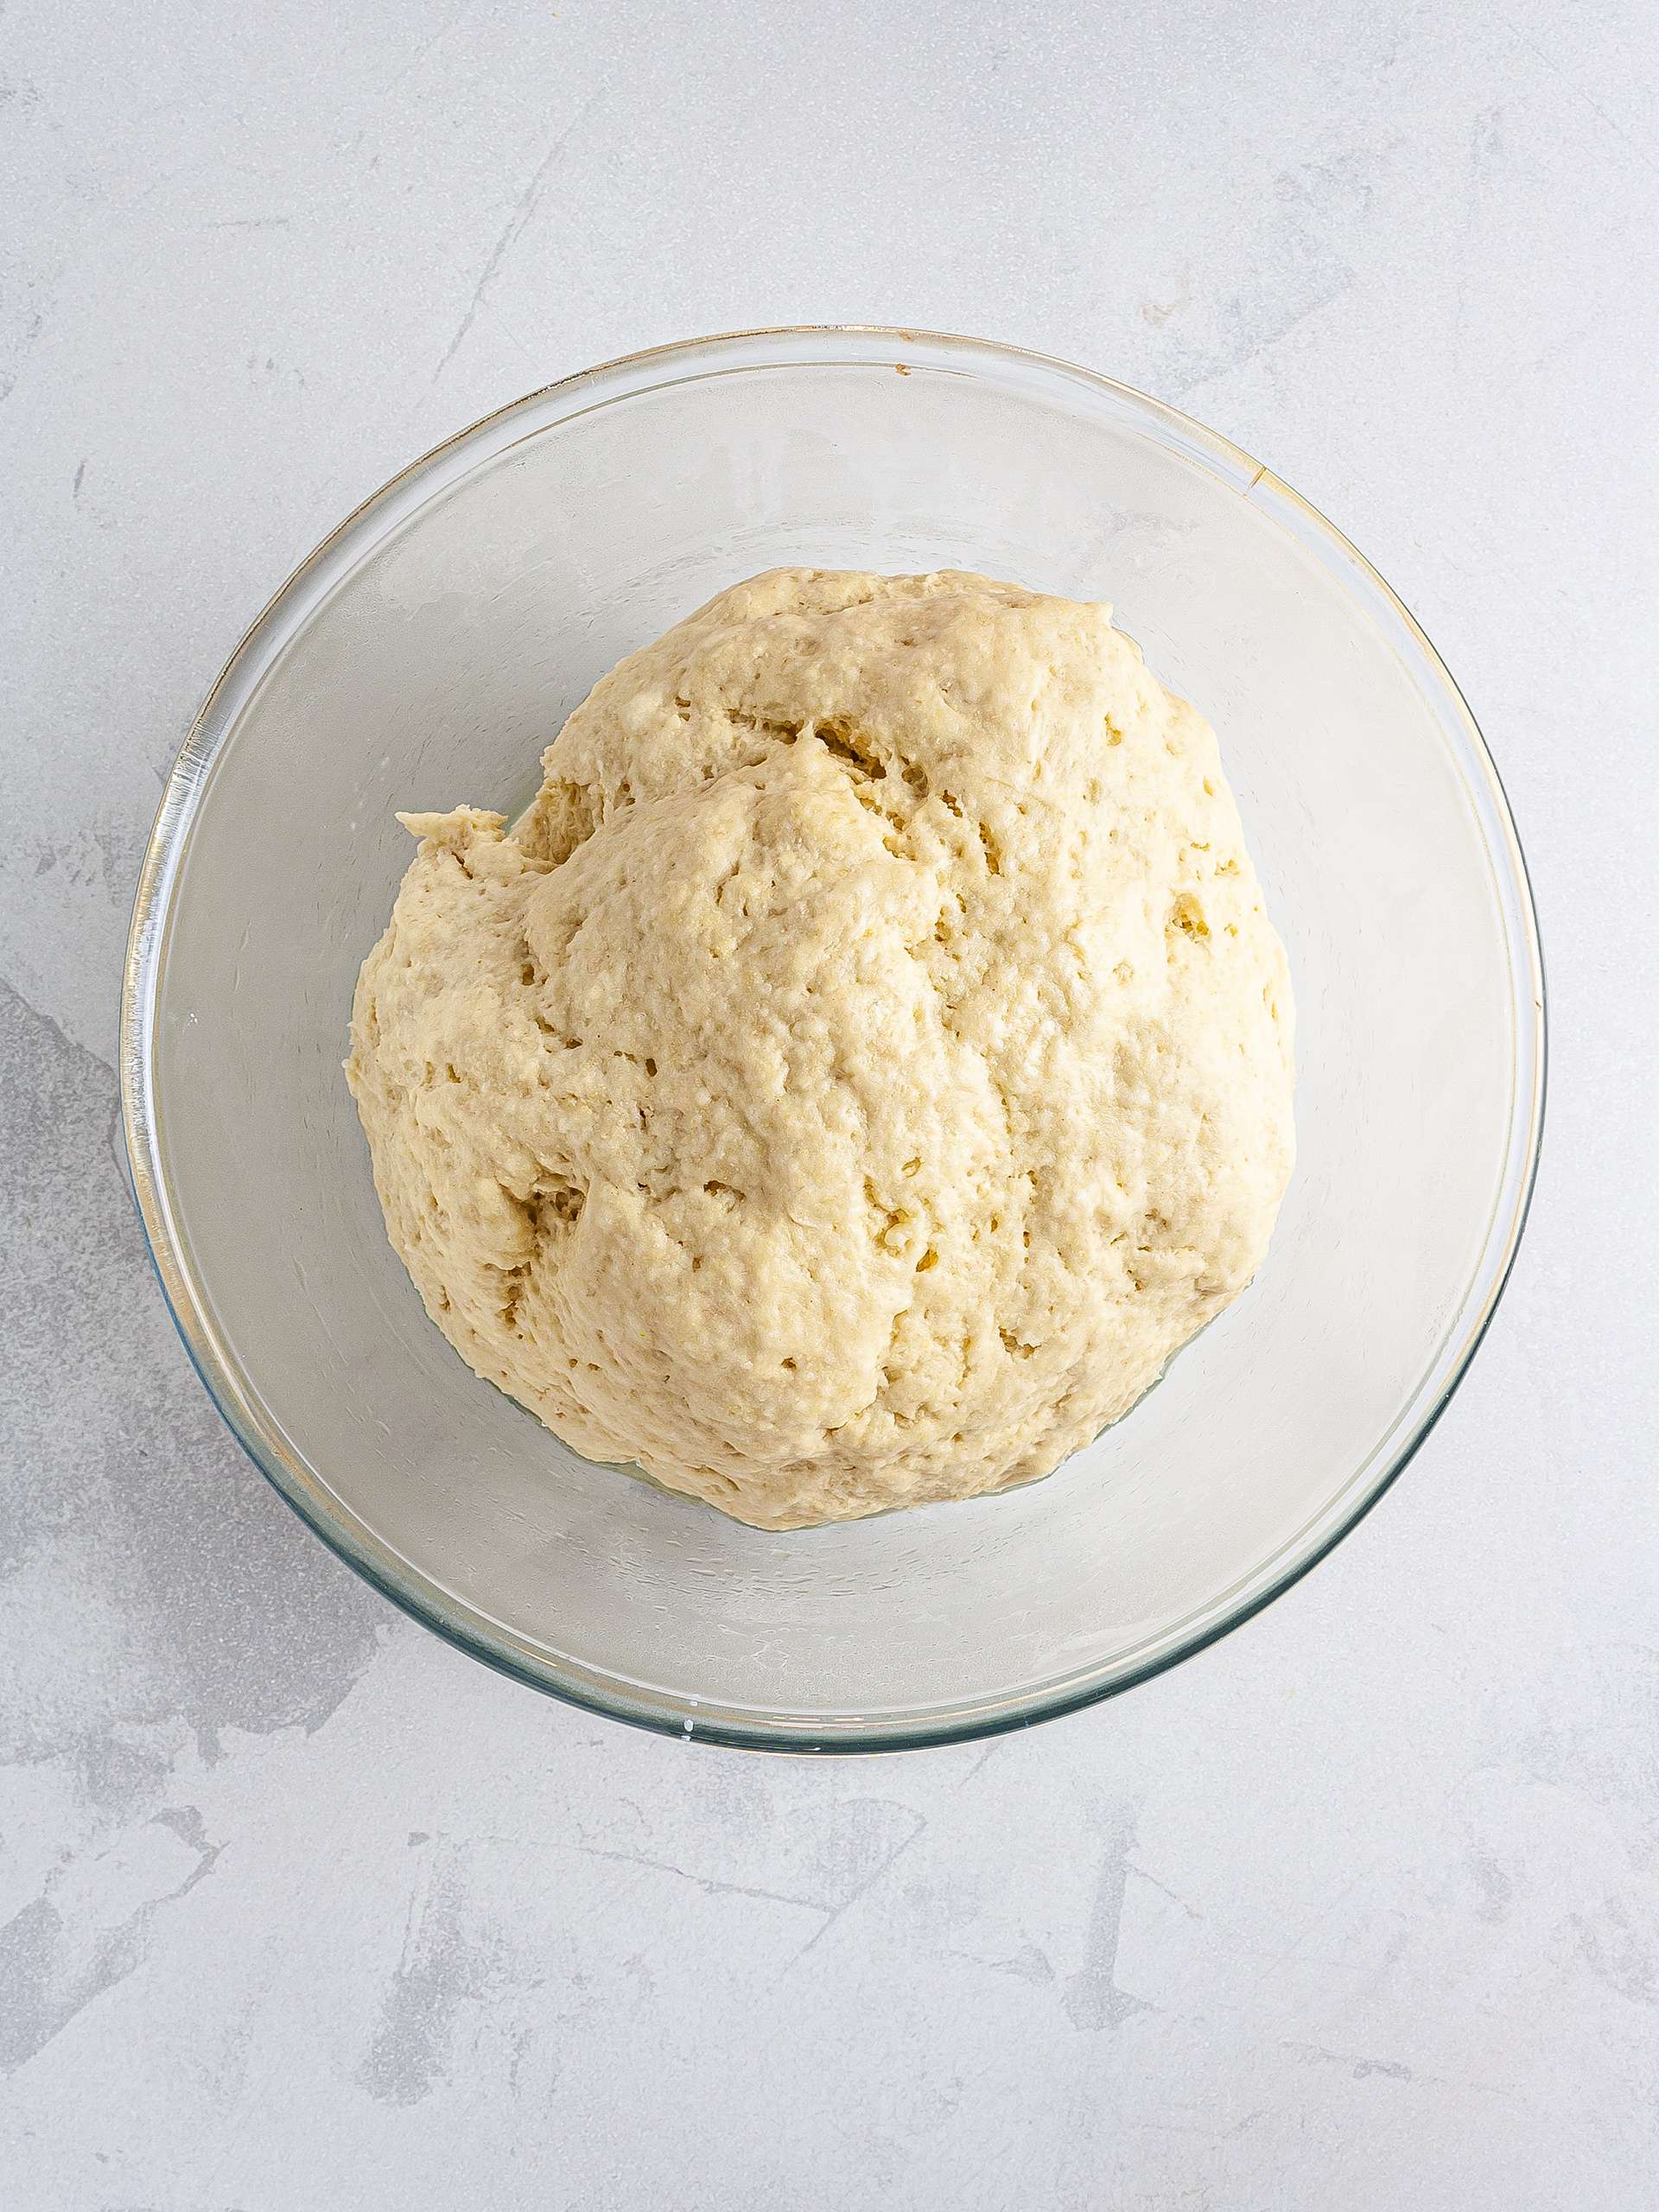 Proved croissant dough